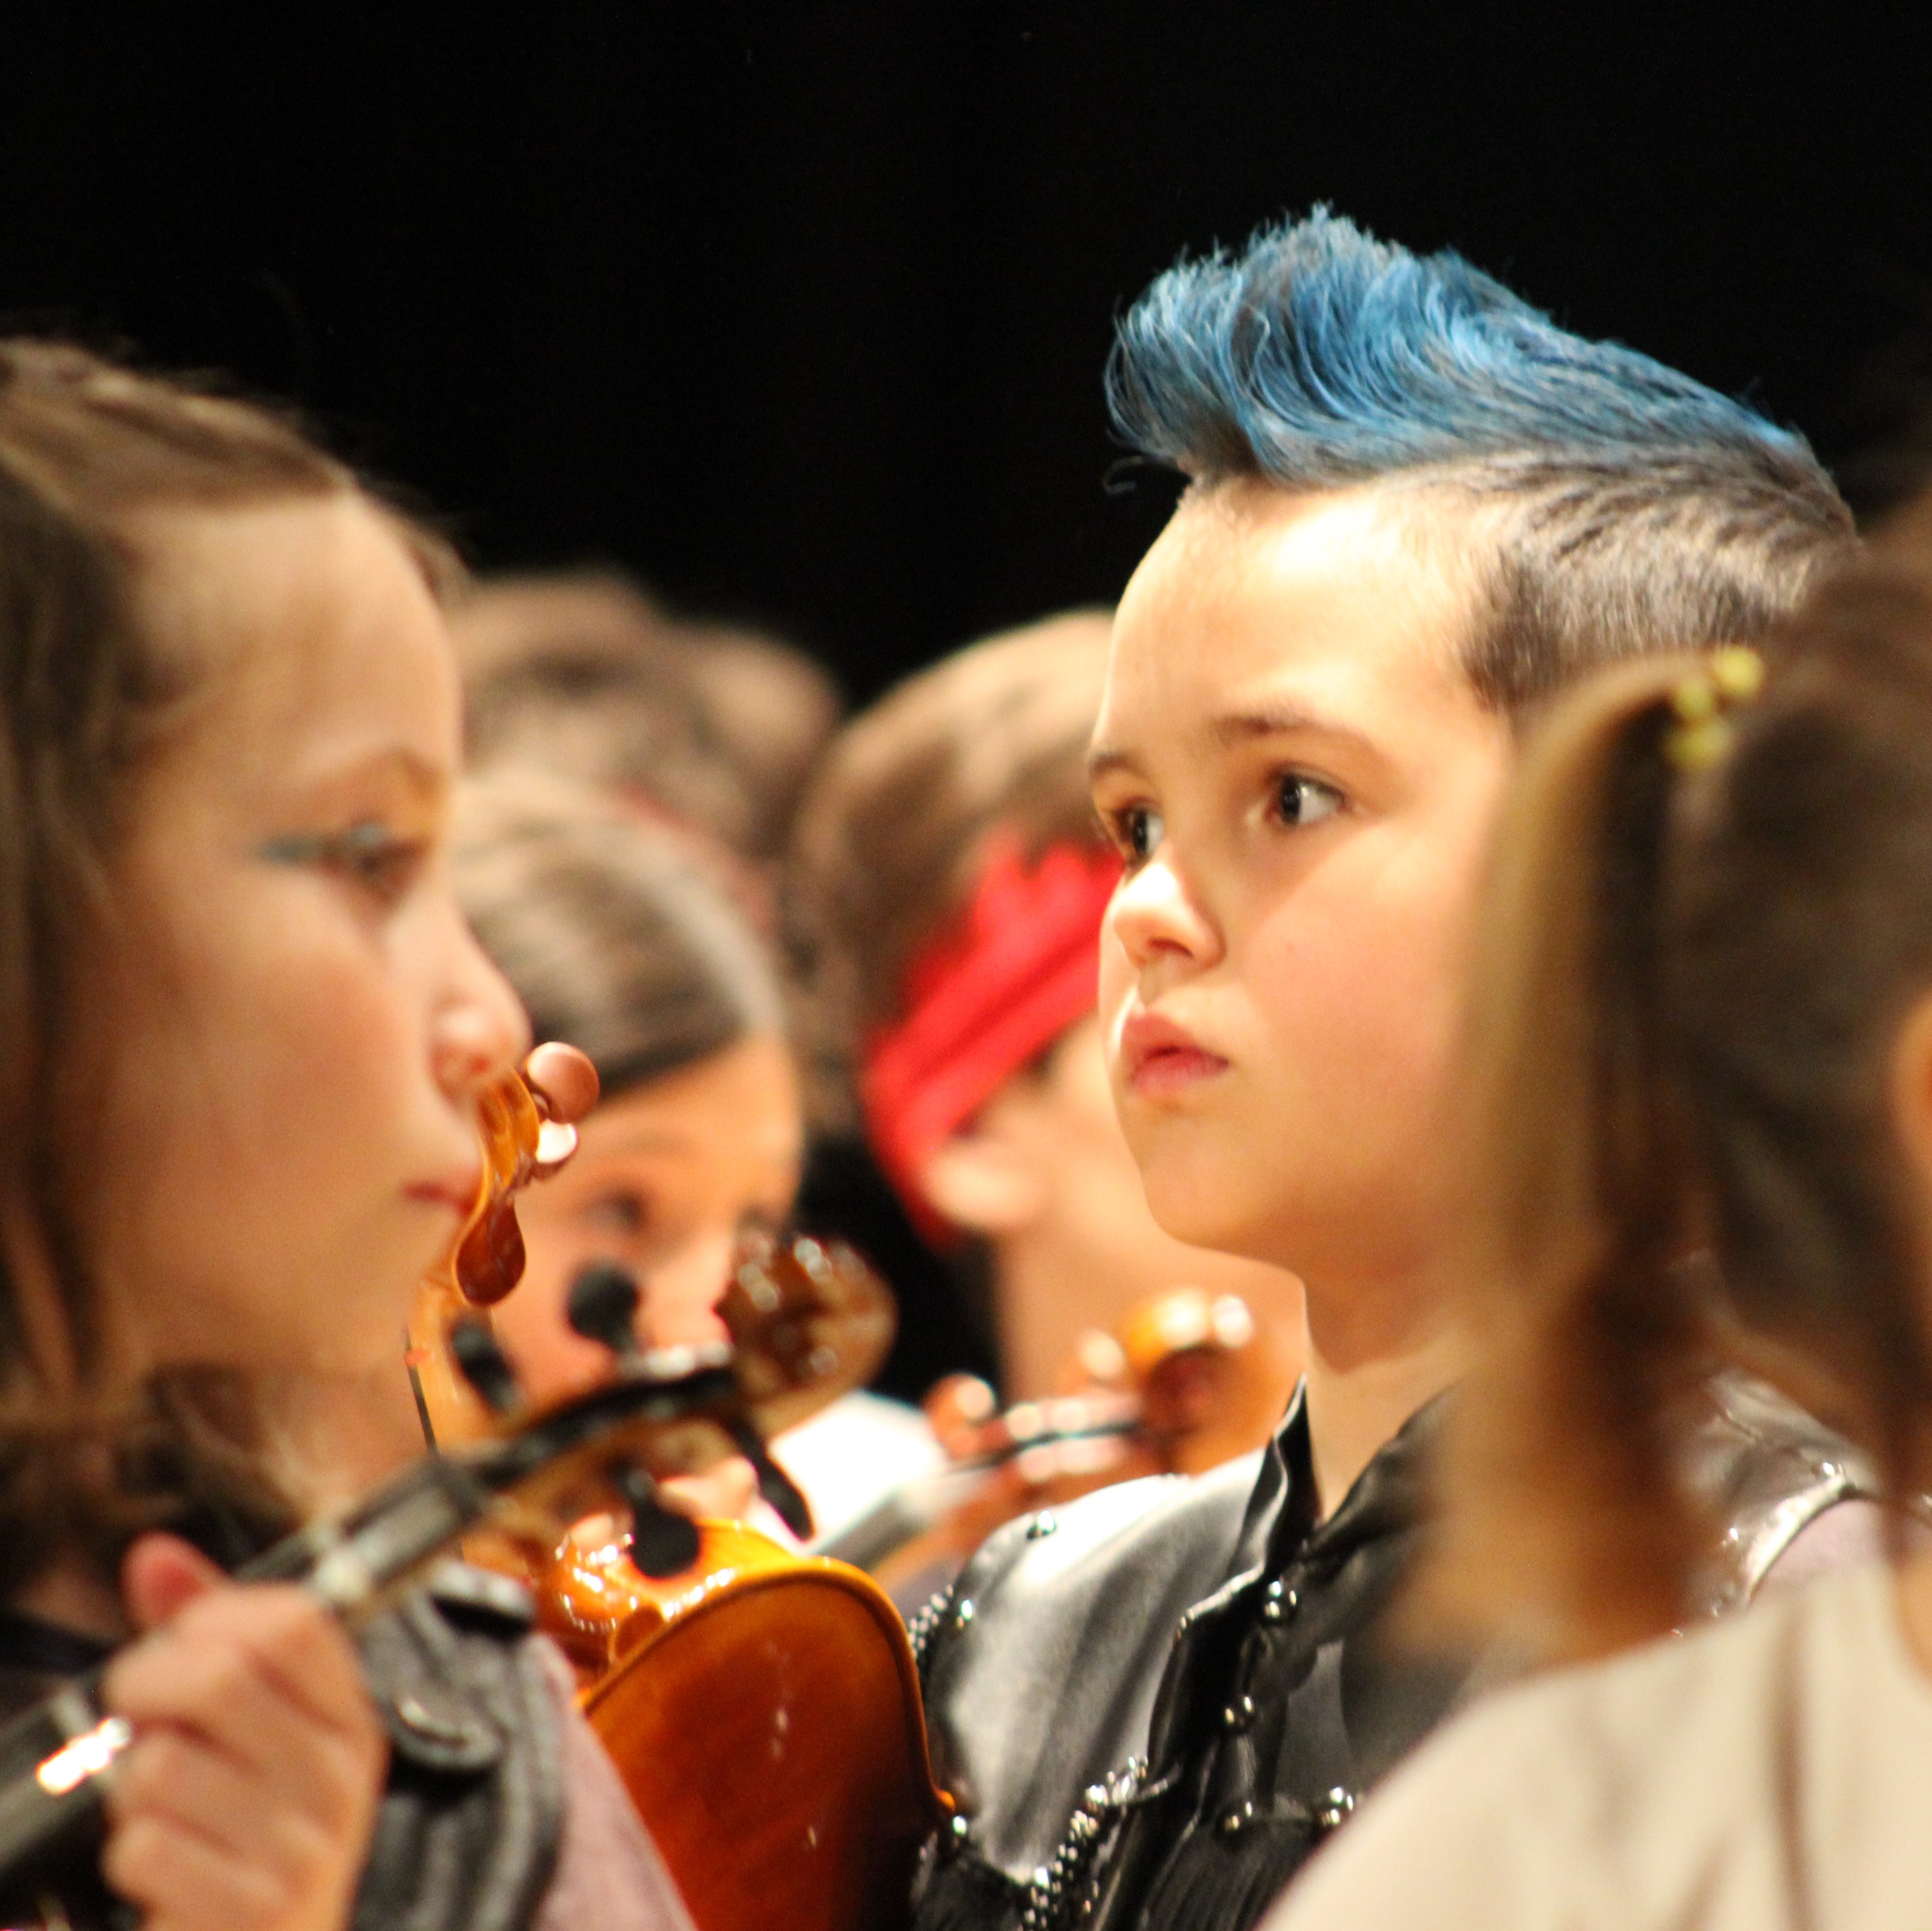 Alumno de violín en posición de descanso y muy concentrado a punto de comenzar su concierto disfrazado de concierto con una cresta azul impresionante